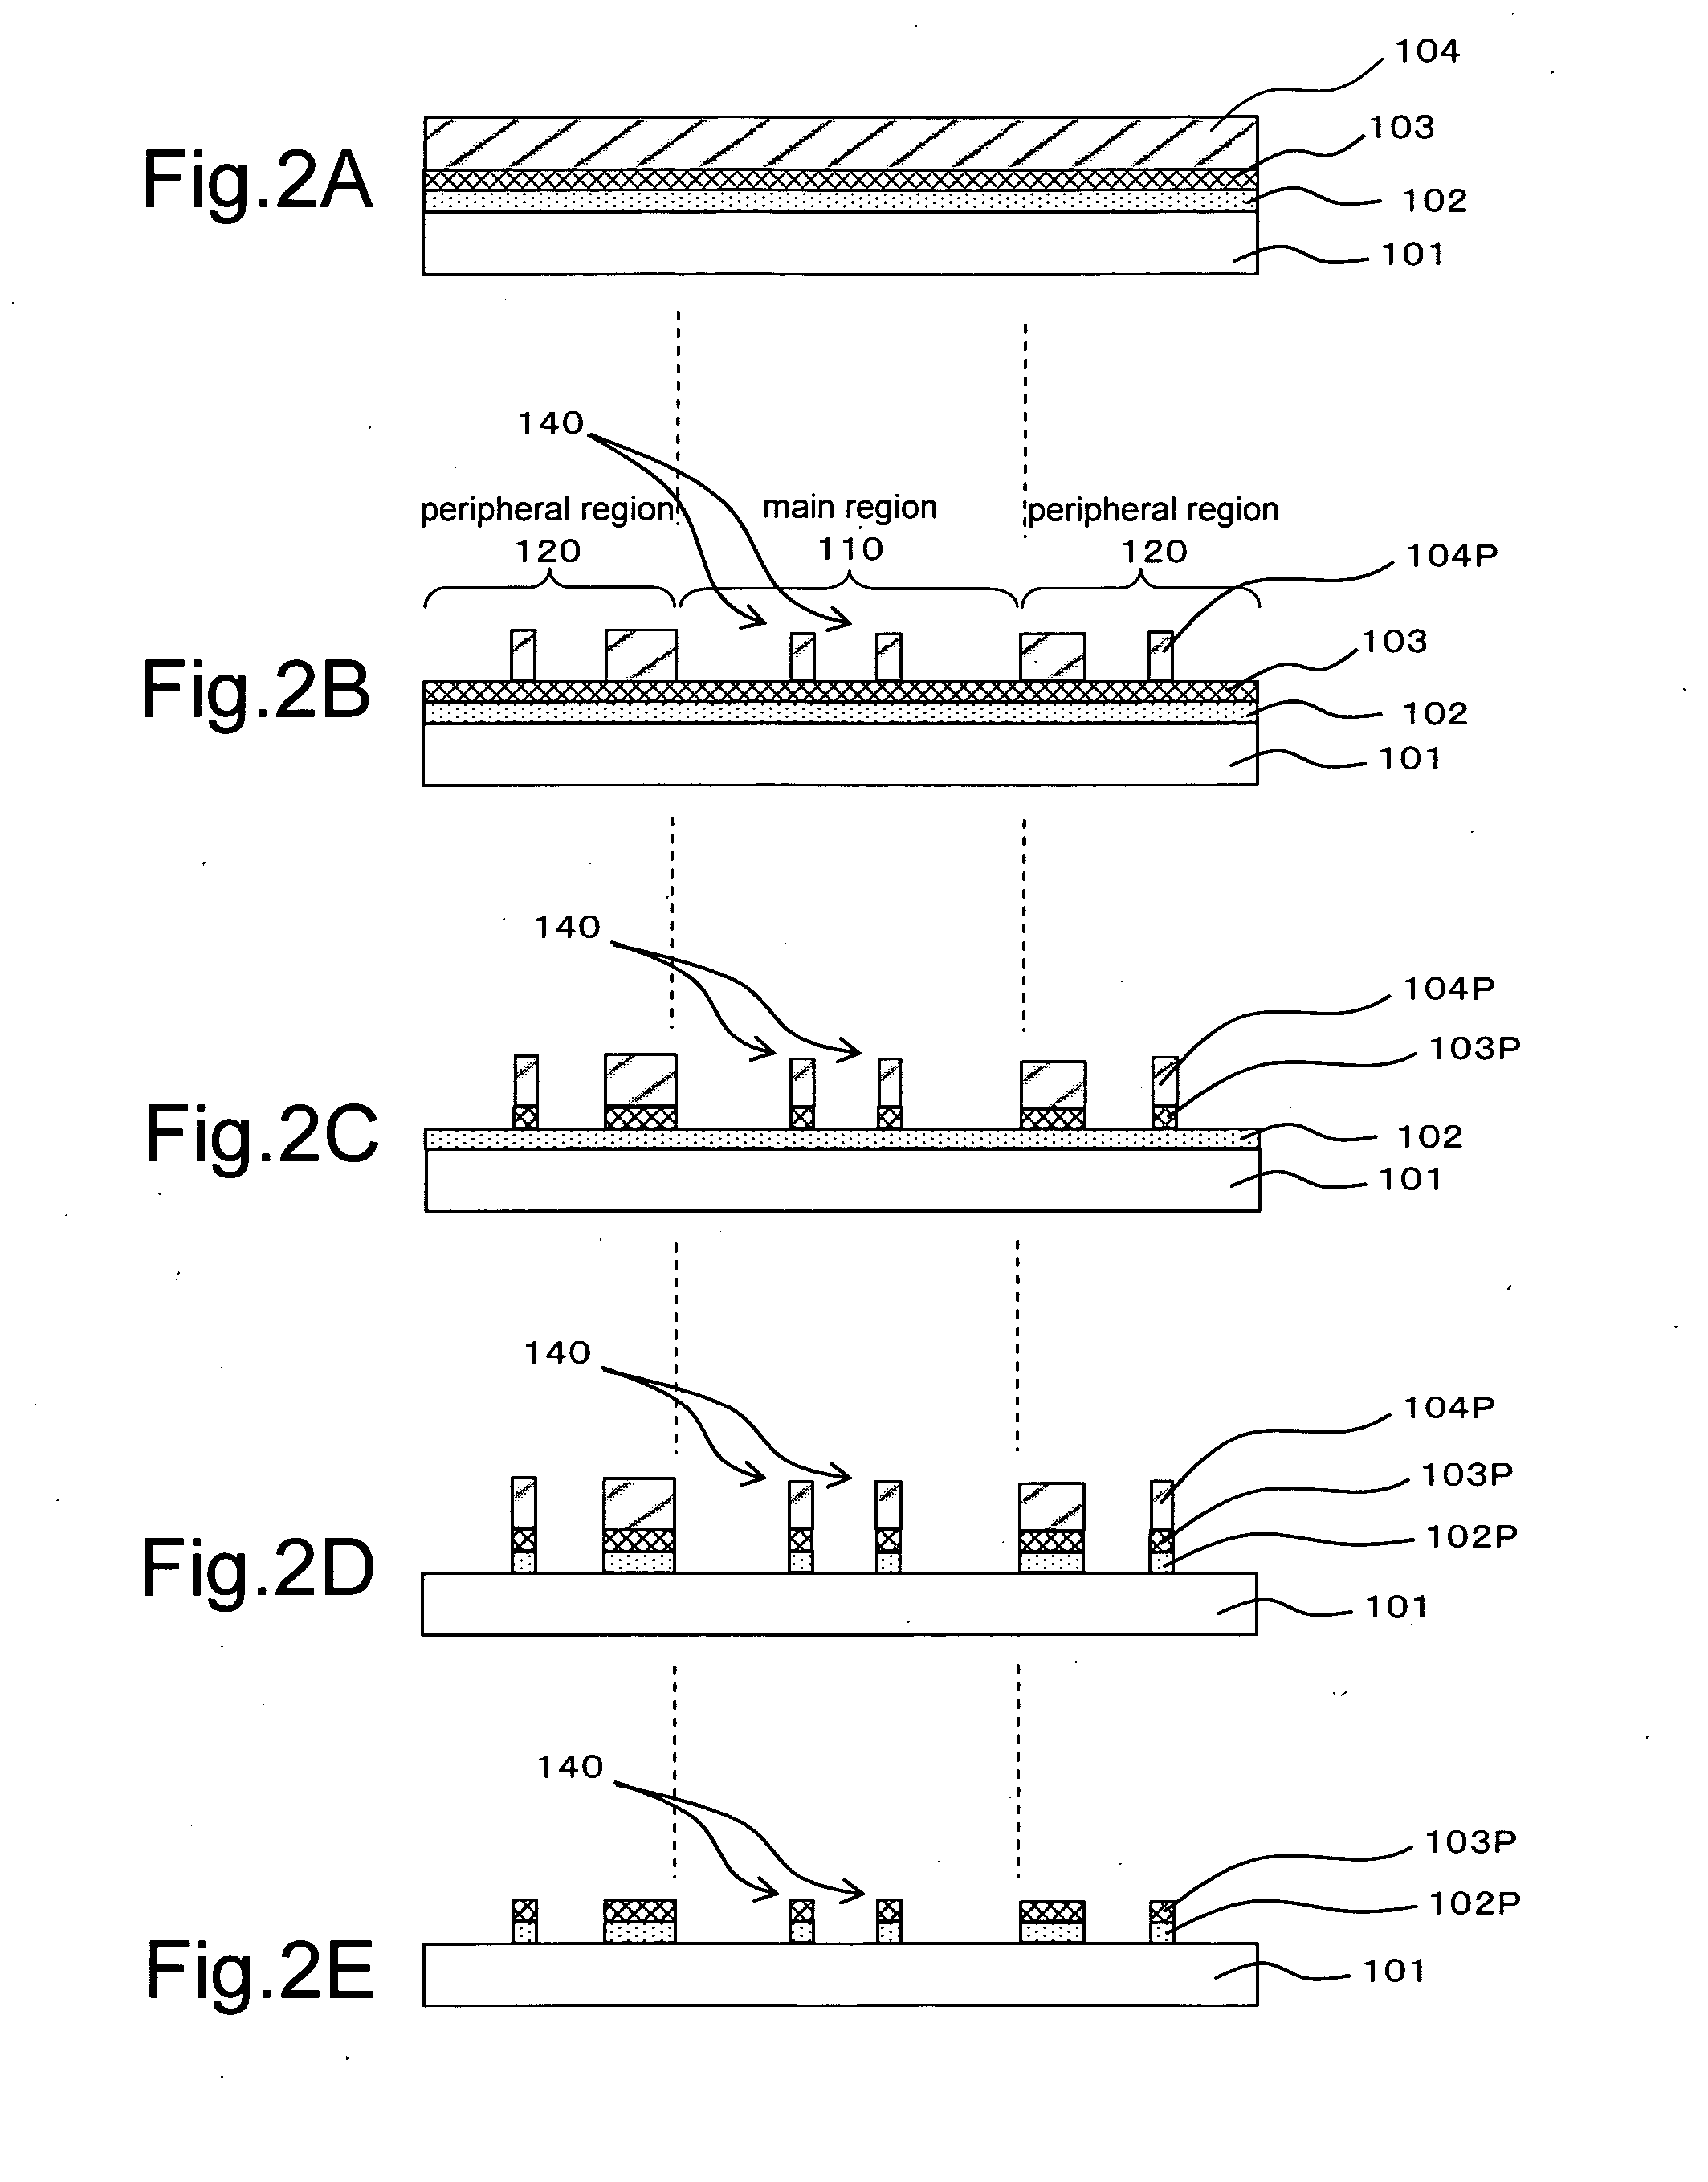 Photomask, method for fabricating photomask, and method for fabricating semiconductor device